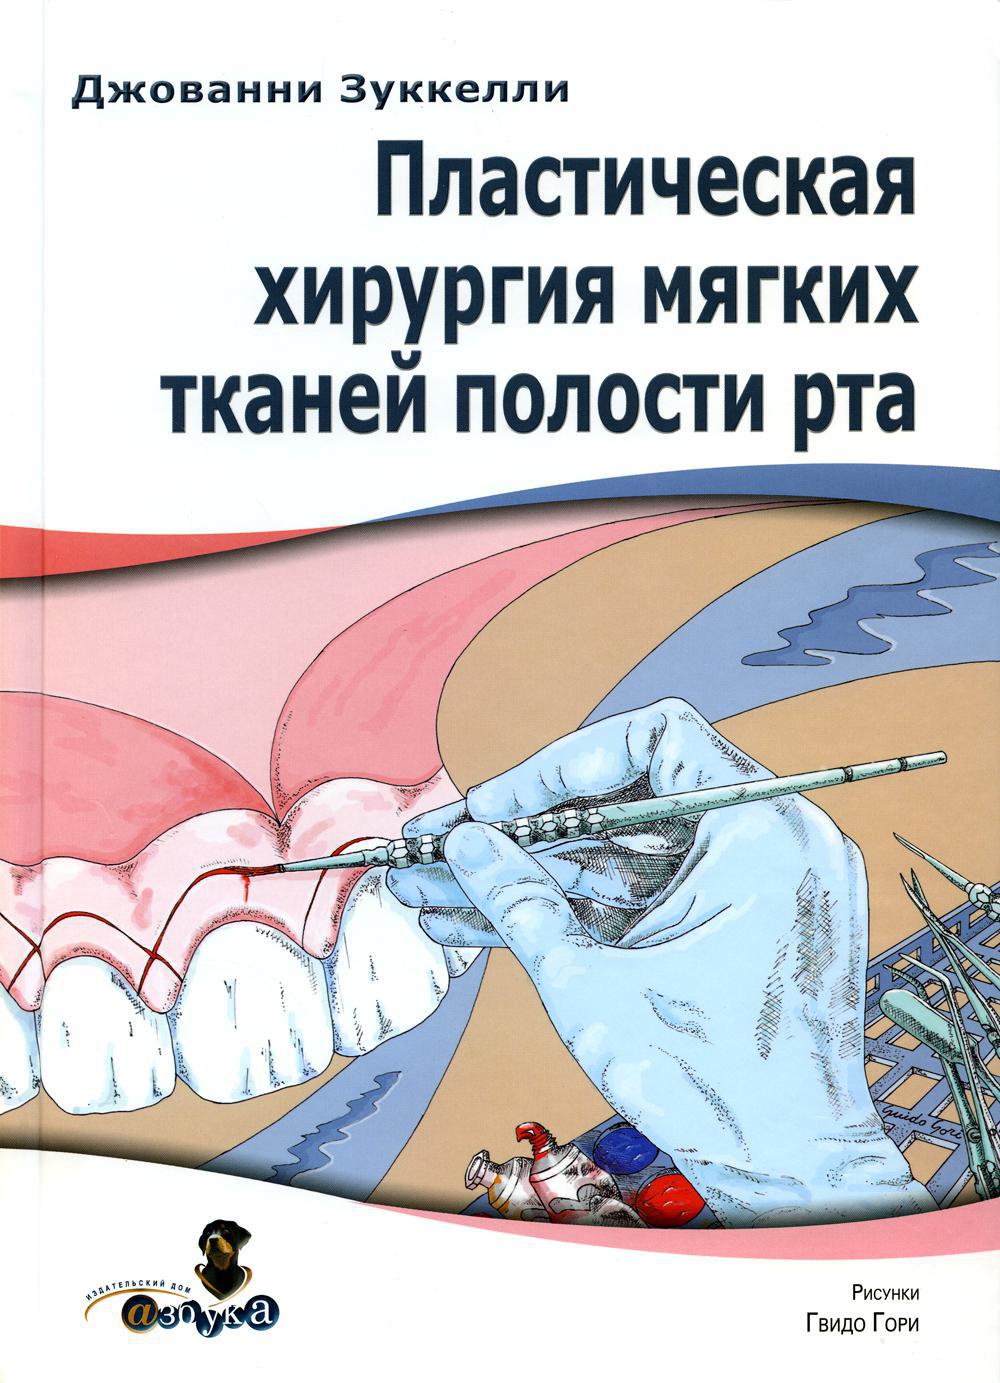 Пластическая хирургия мягких тканей полости рта